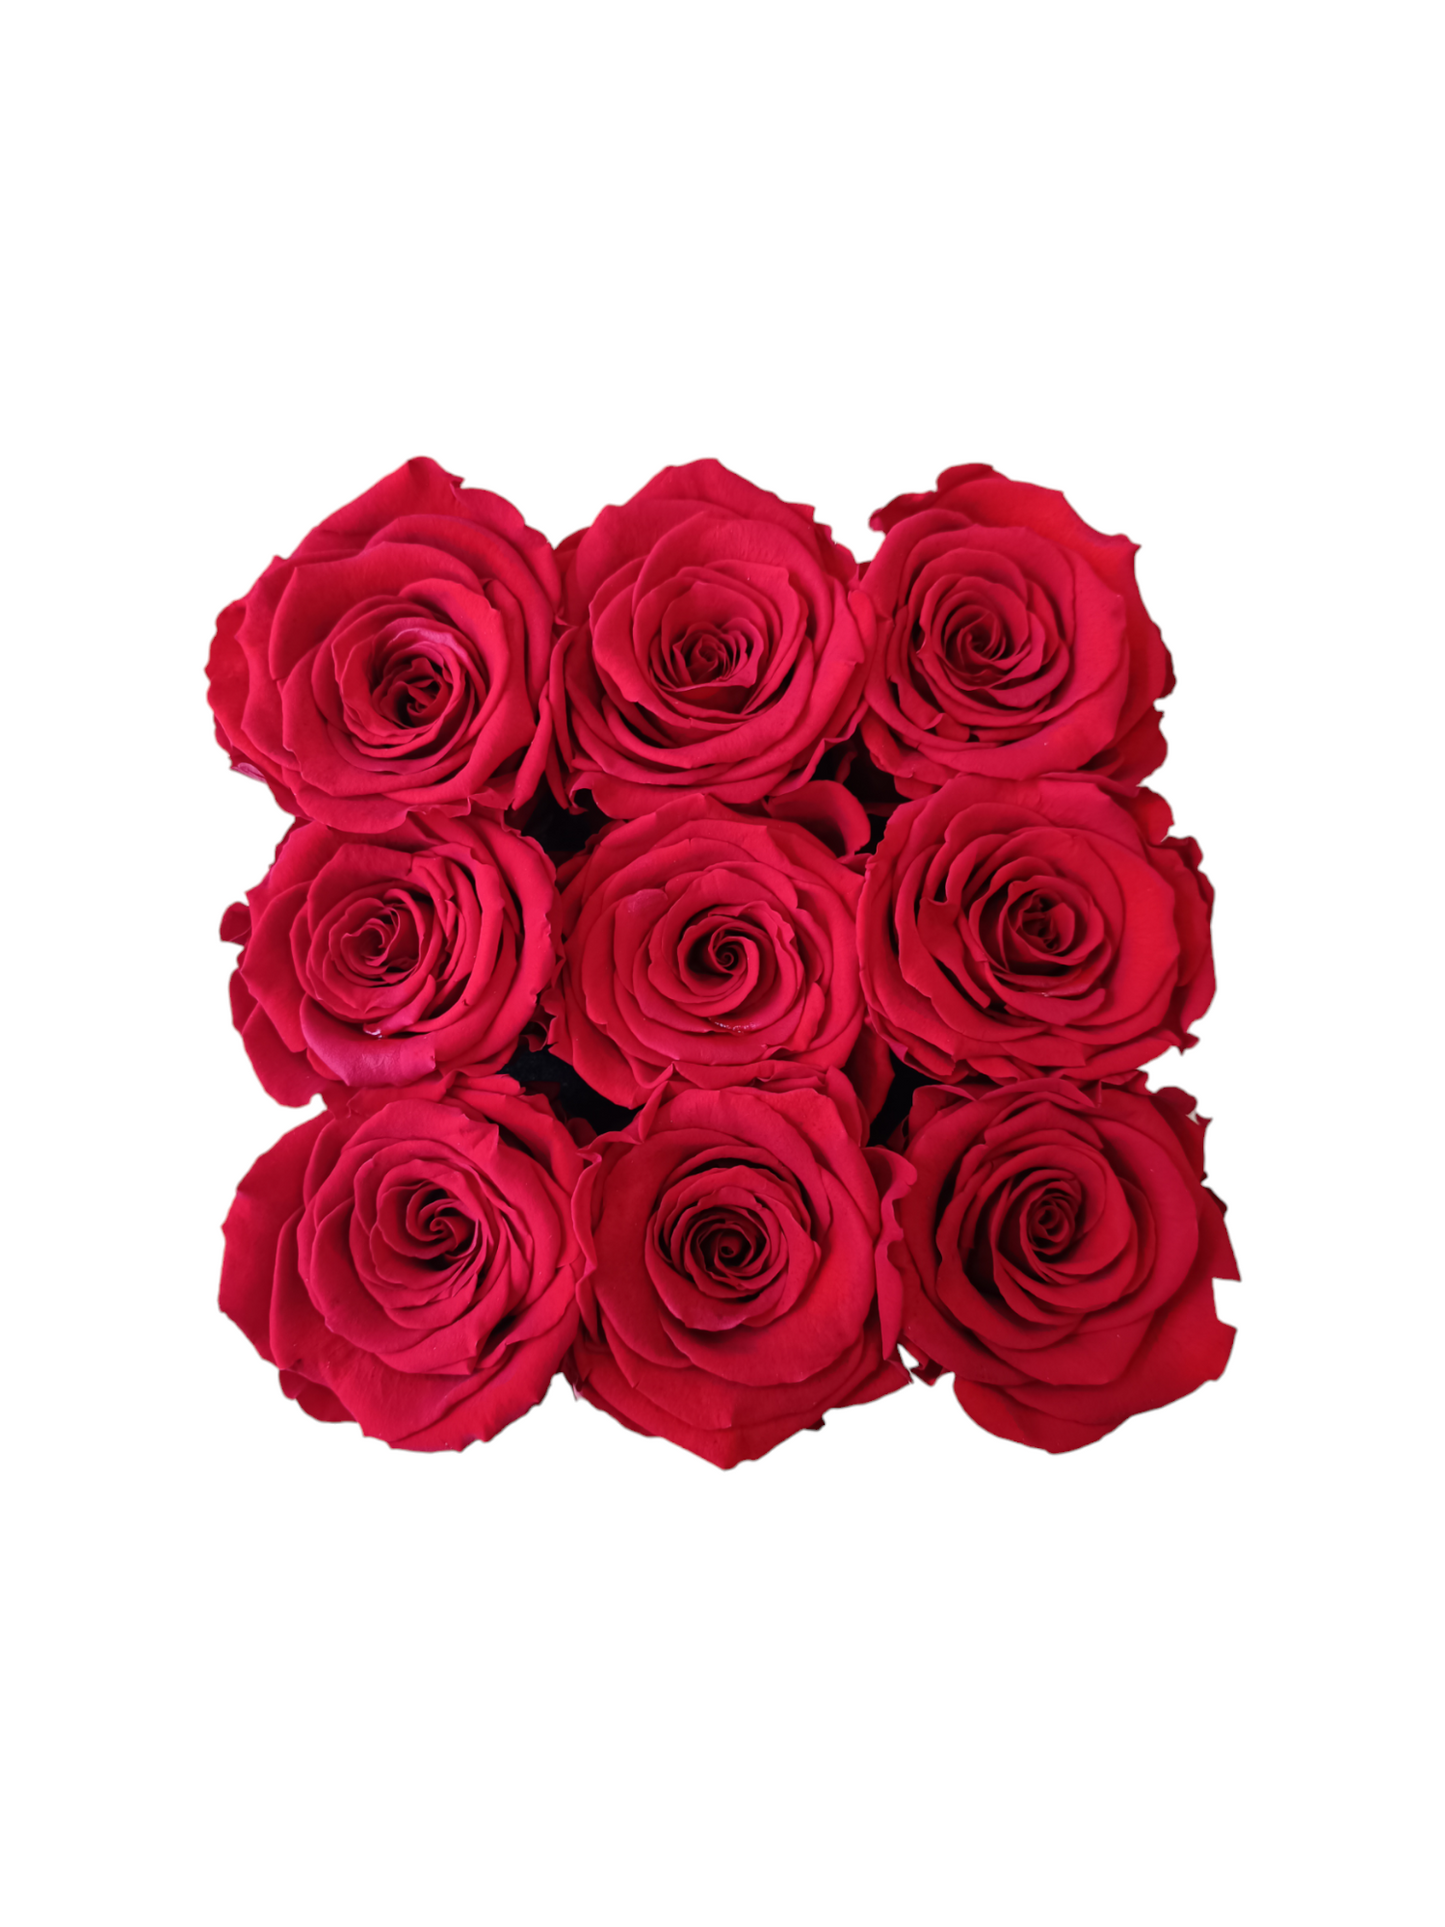 Box Square Black M - Stabilisierte rote Rosen